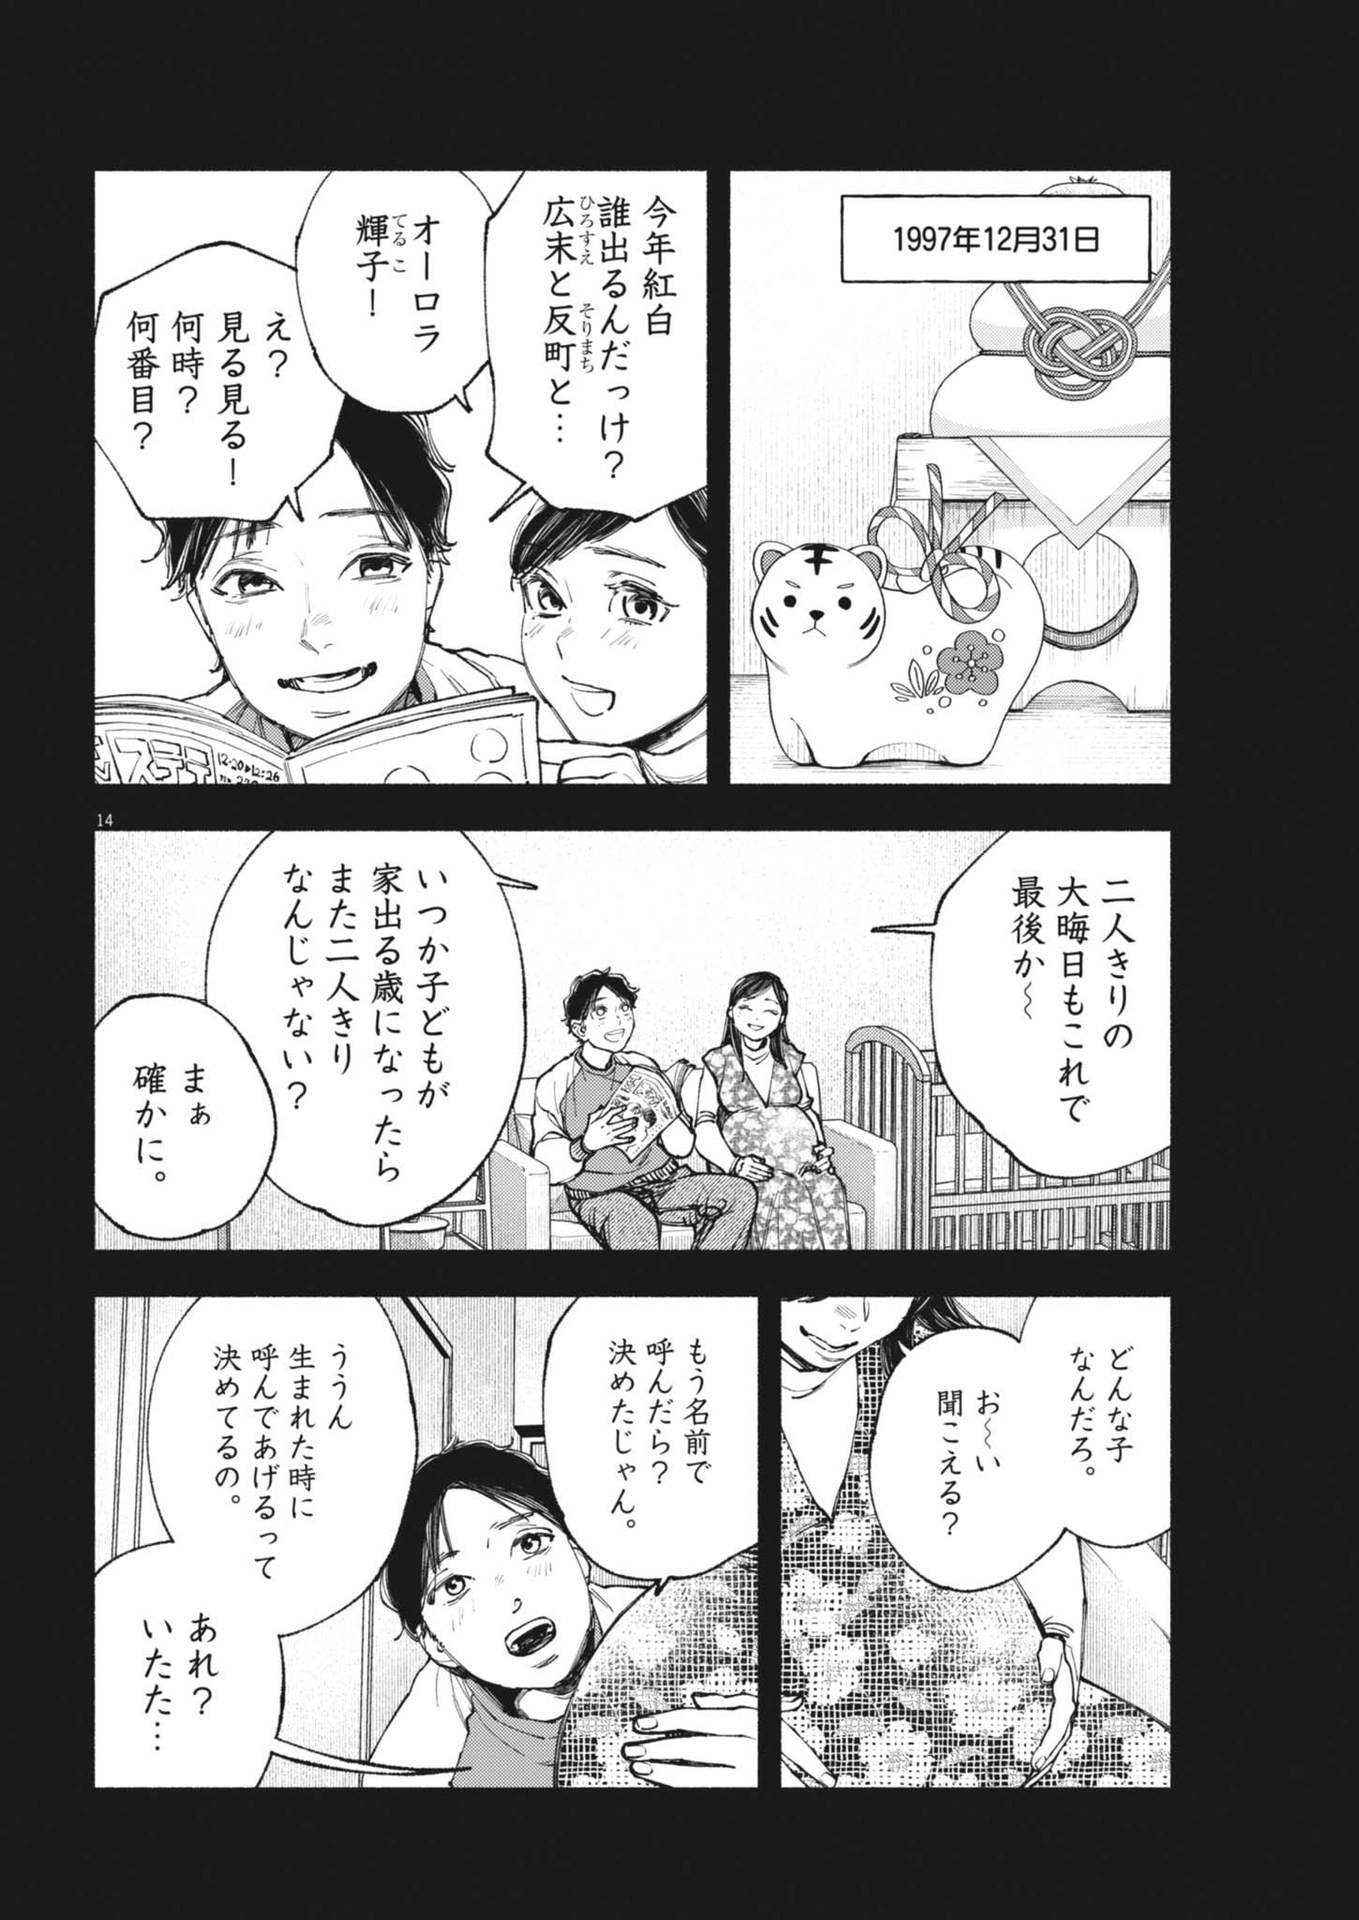 Konoyo wa Tatakau Kachi ga Aru  - Chapter 26 - Page 14